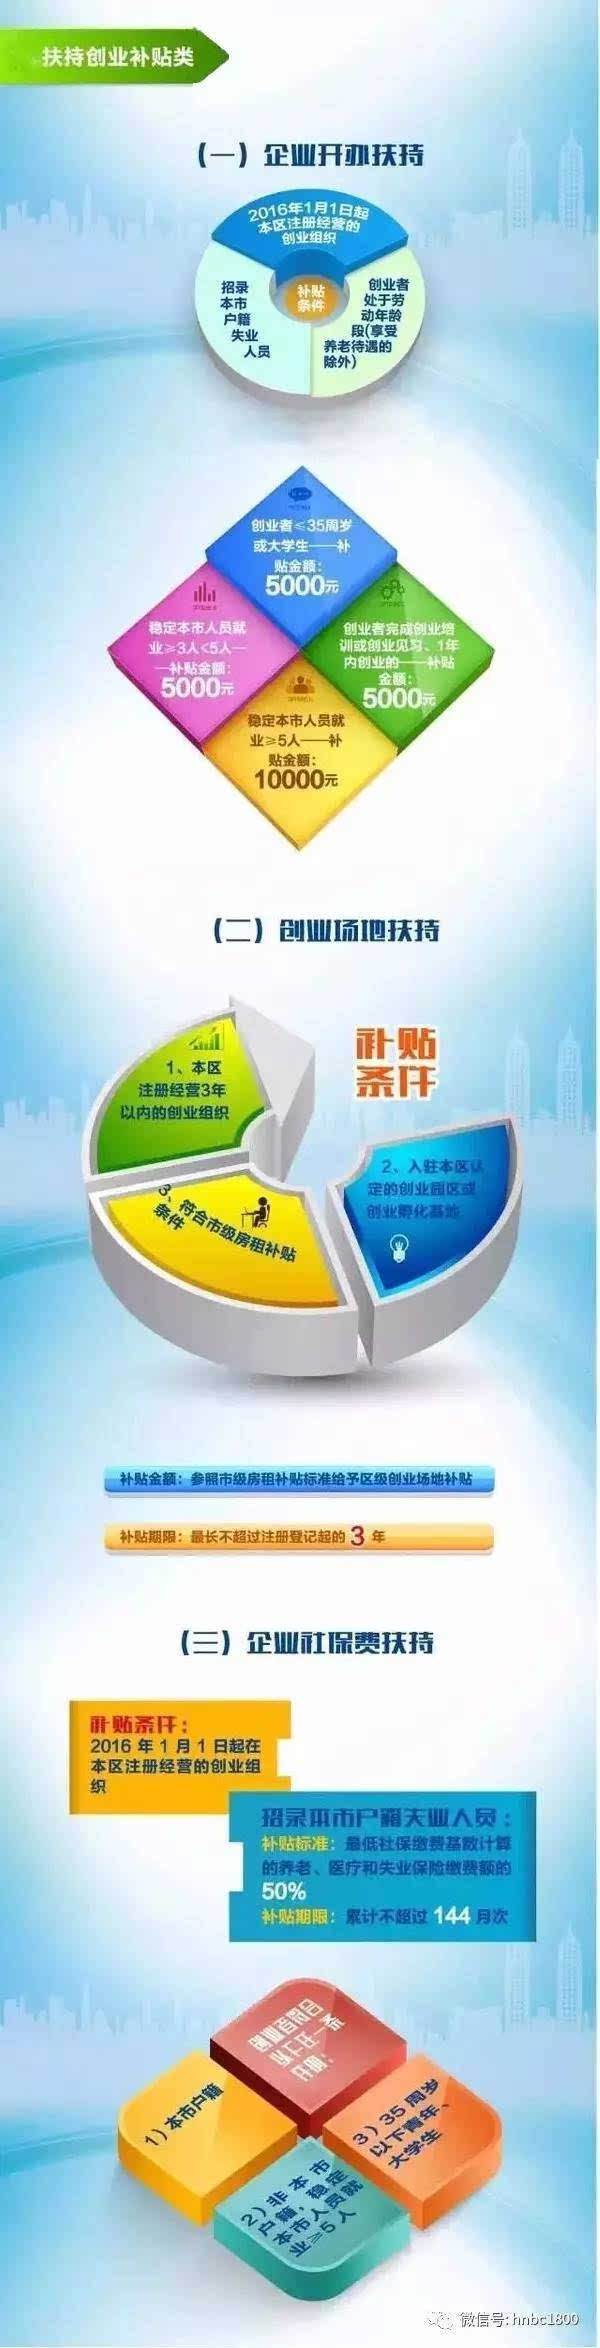 上海普陀区创业扶持政策 上海创业落户新政策2021